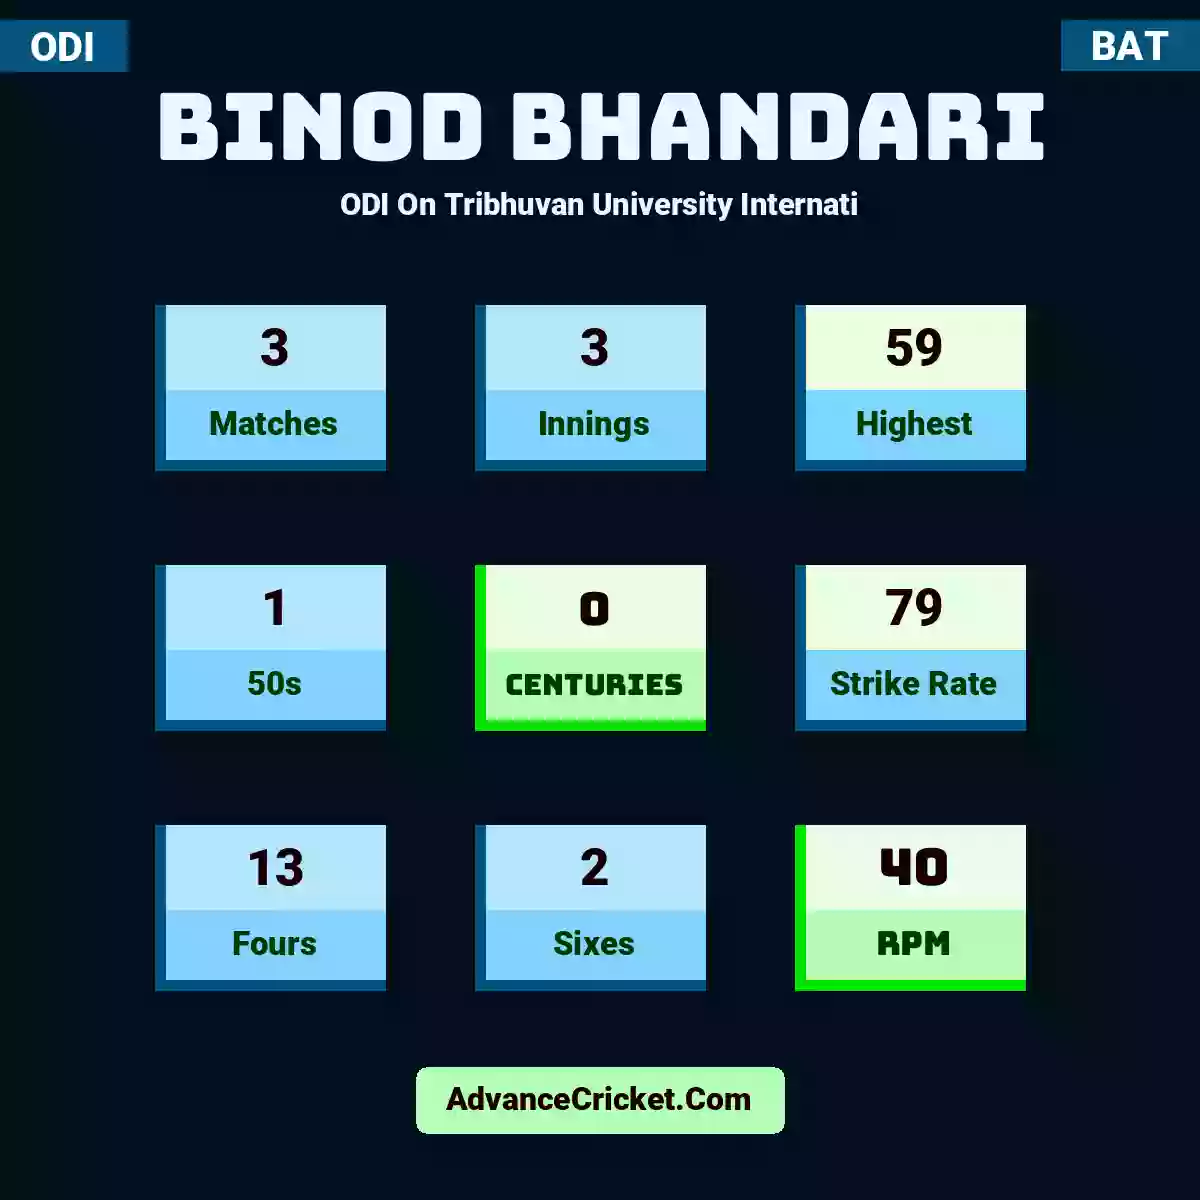 Binod Bhandari ODI  On Tribhuvan University Internati, Binod Bhandari played 3 matches, scored 59 runs as highest, 1 half-centuries, and 0 centuries, with a strike rate of 79. B.Bhandari hit 13 fours and 2 sixes, with an RPM of 40.